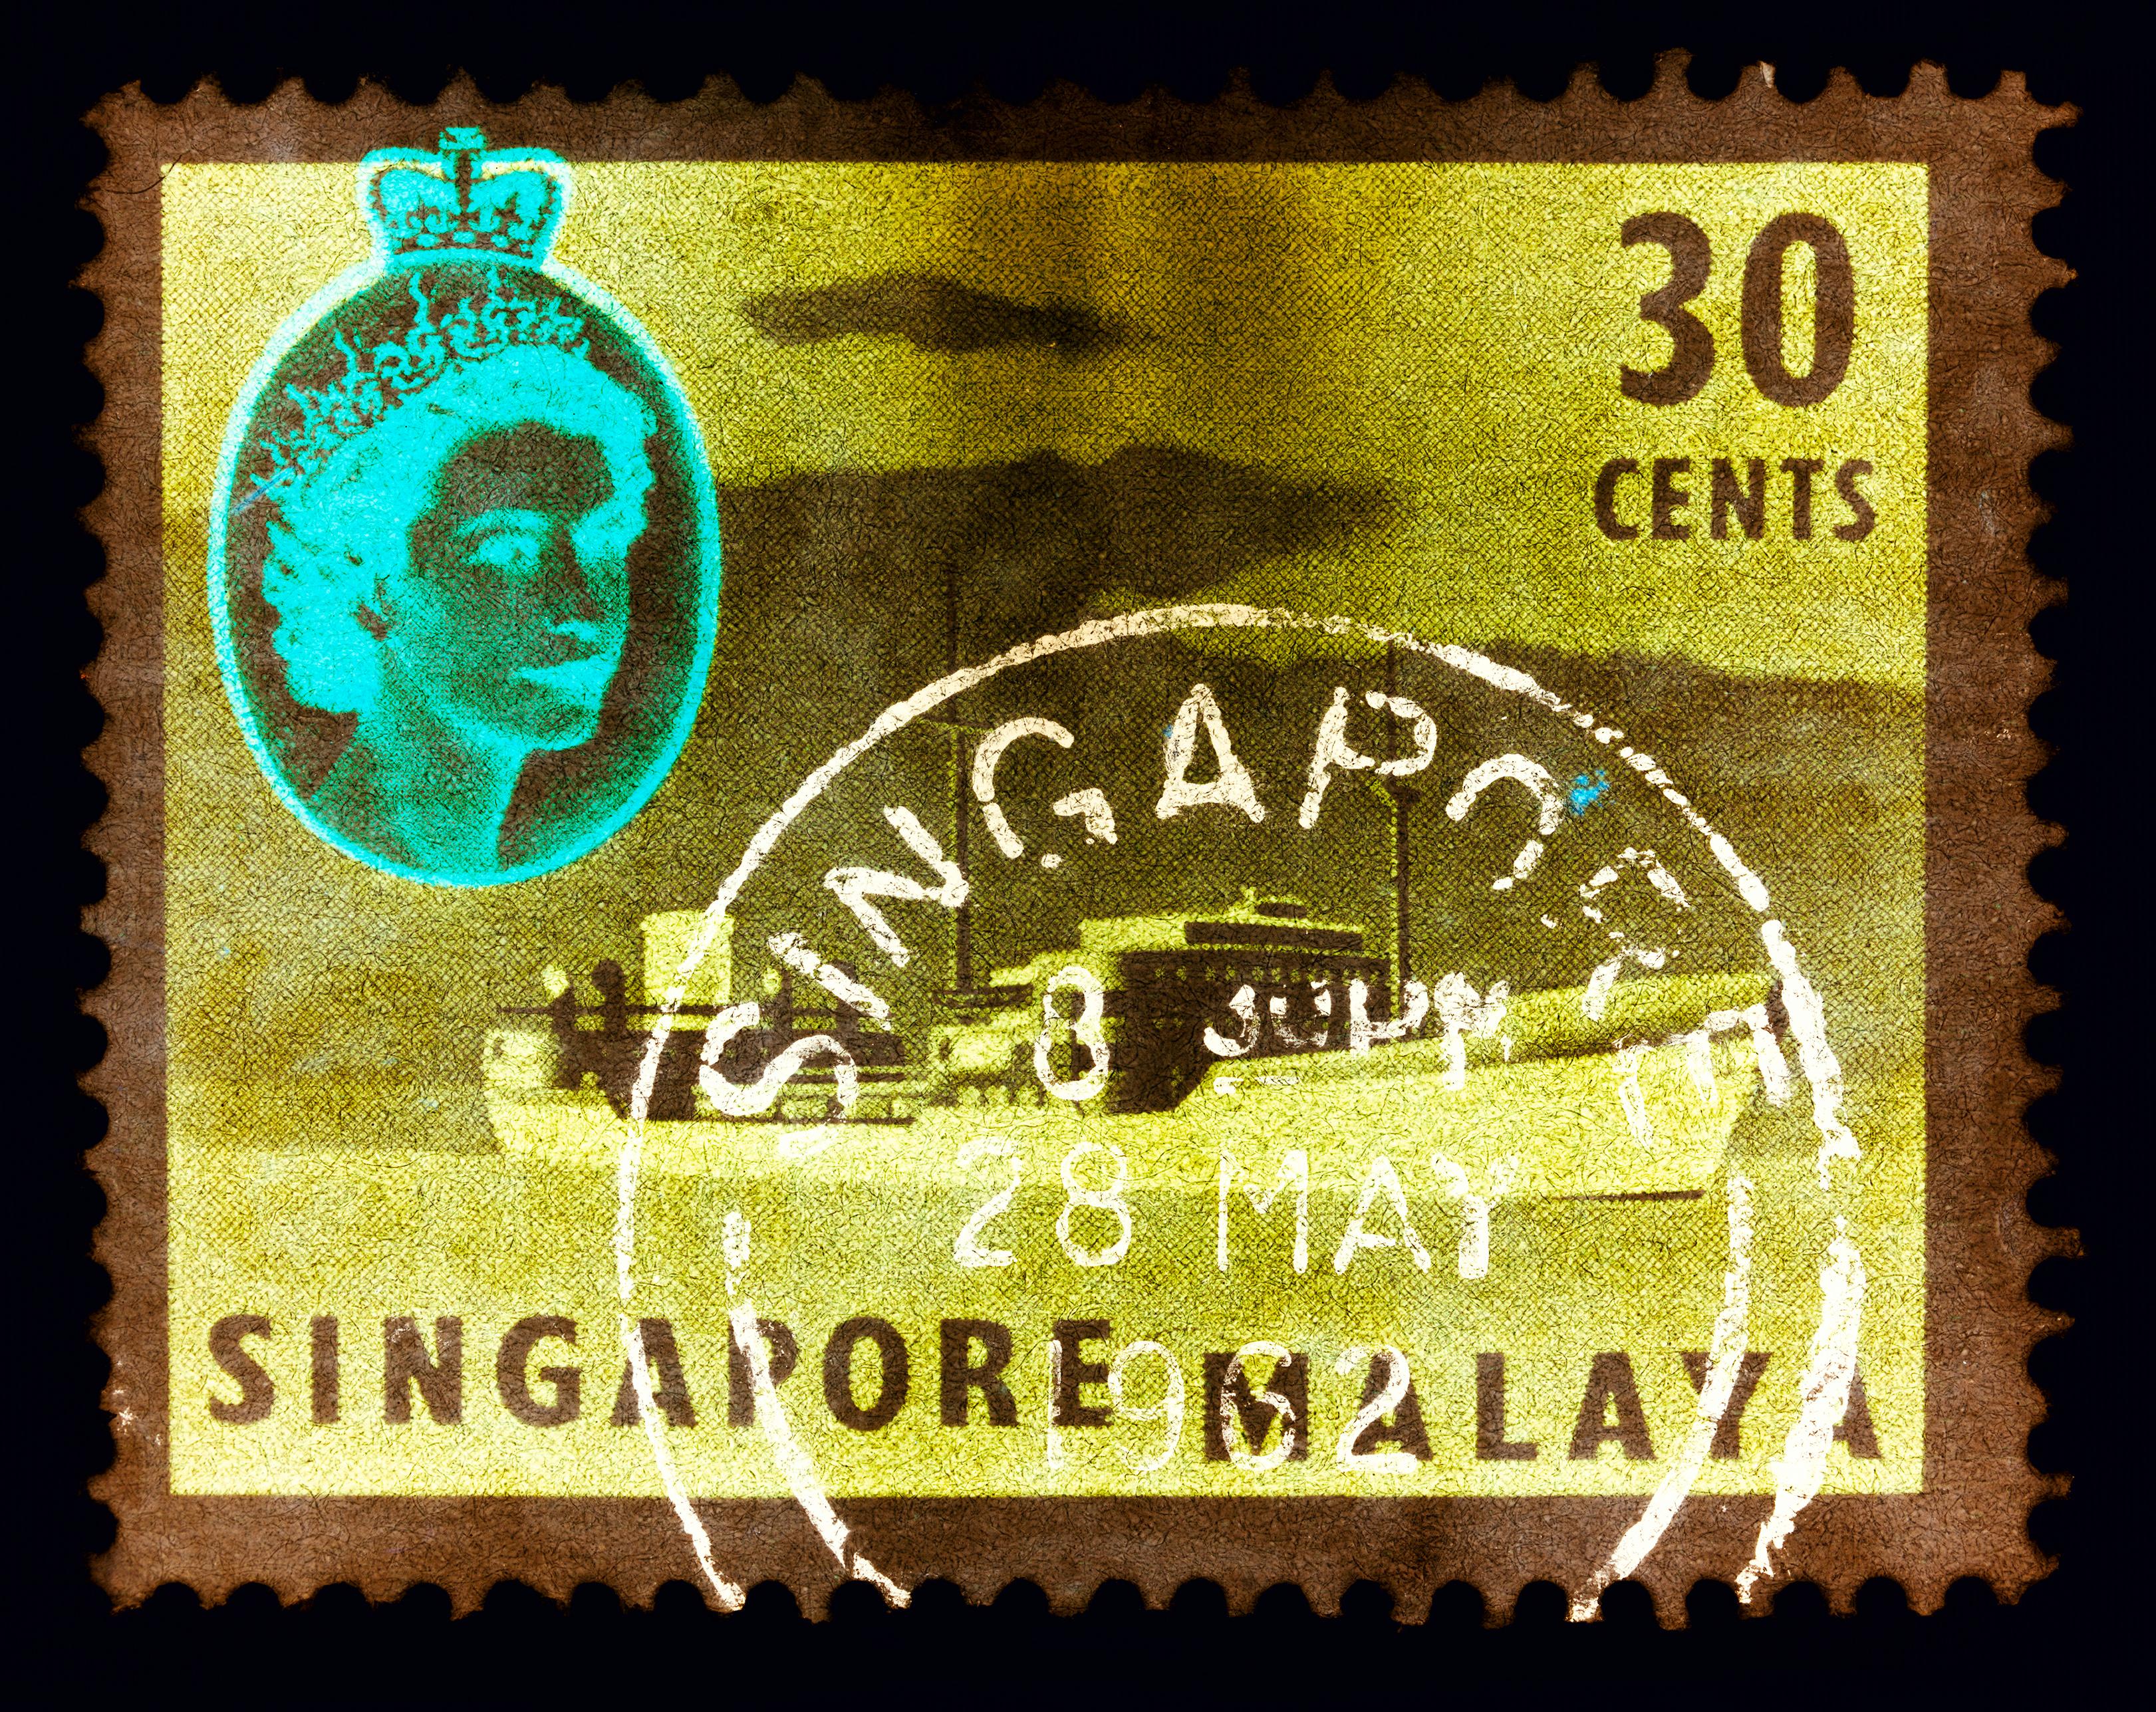 Print Heidler & Heeps - Collection de timbres de Singapour, 30 Cents QEII - Tanker à huile kaki - Photo couleur Pop Art